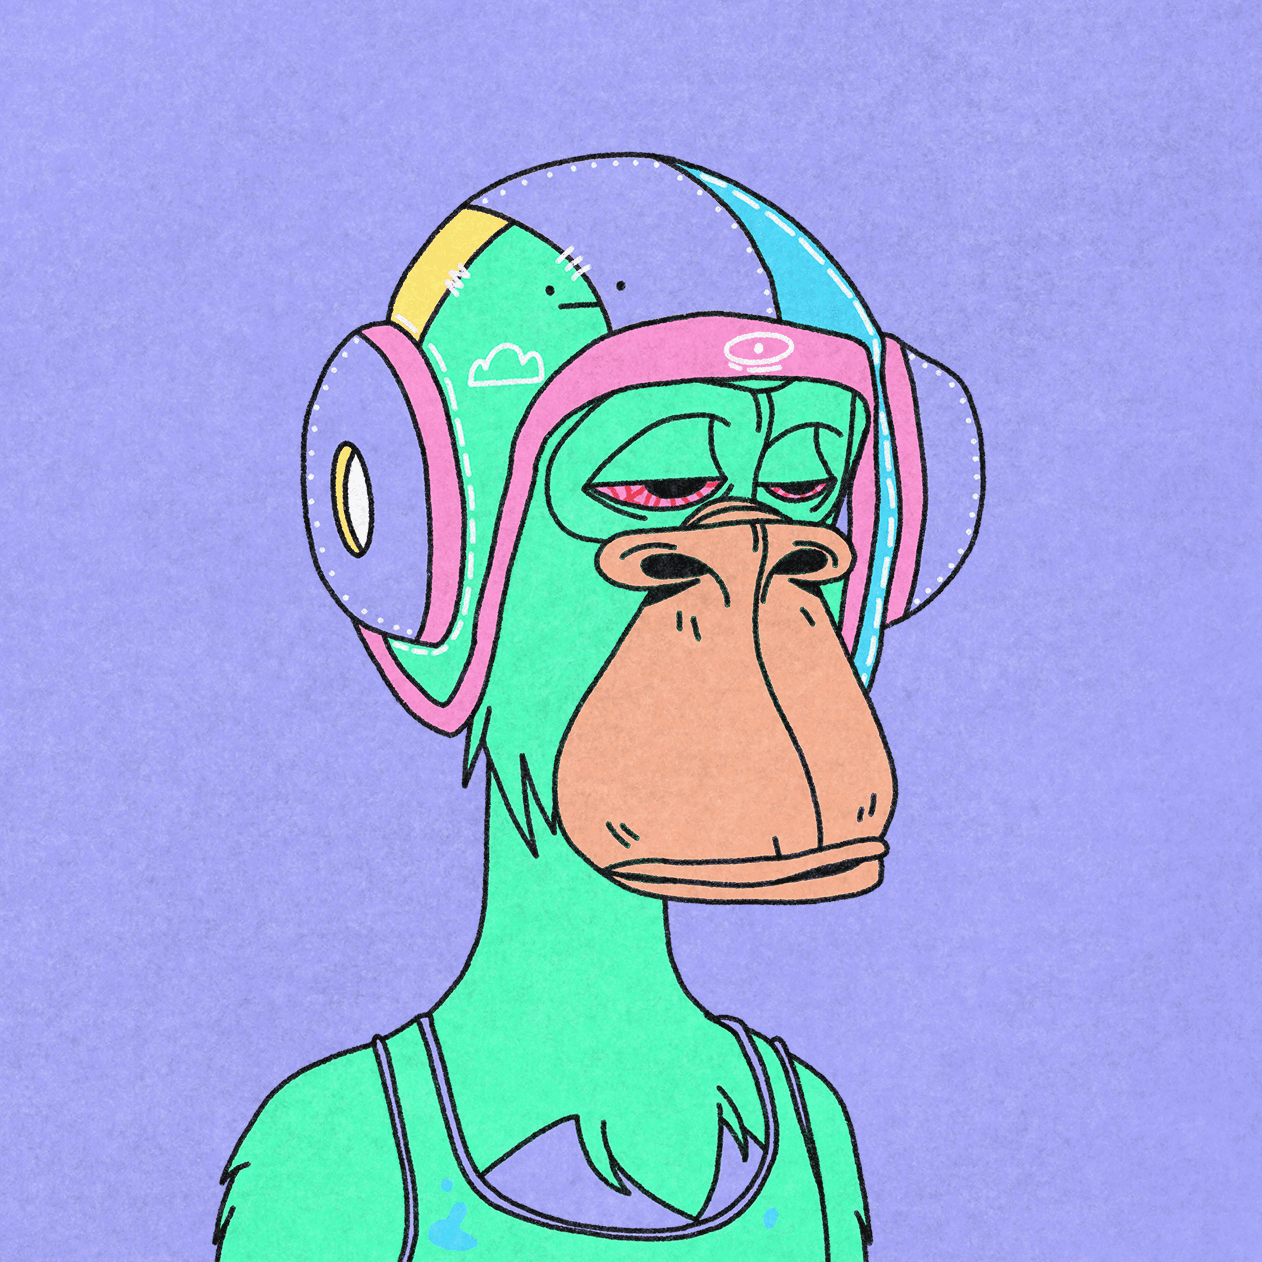 Superlative Ape #246